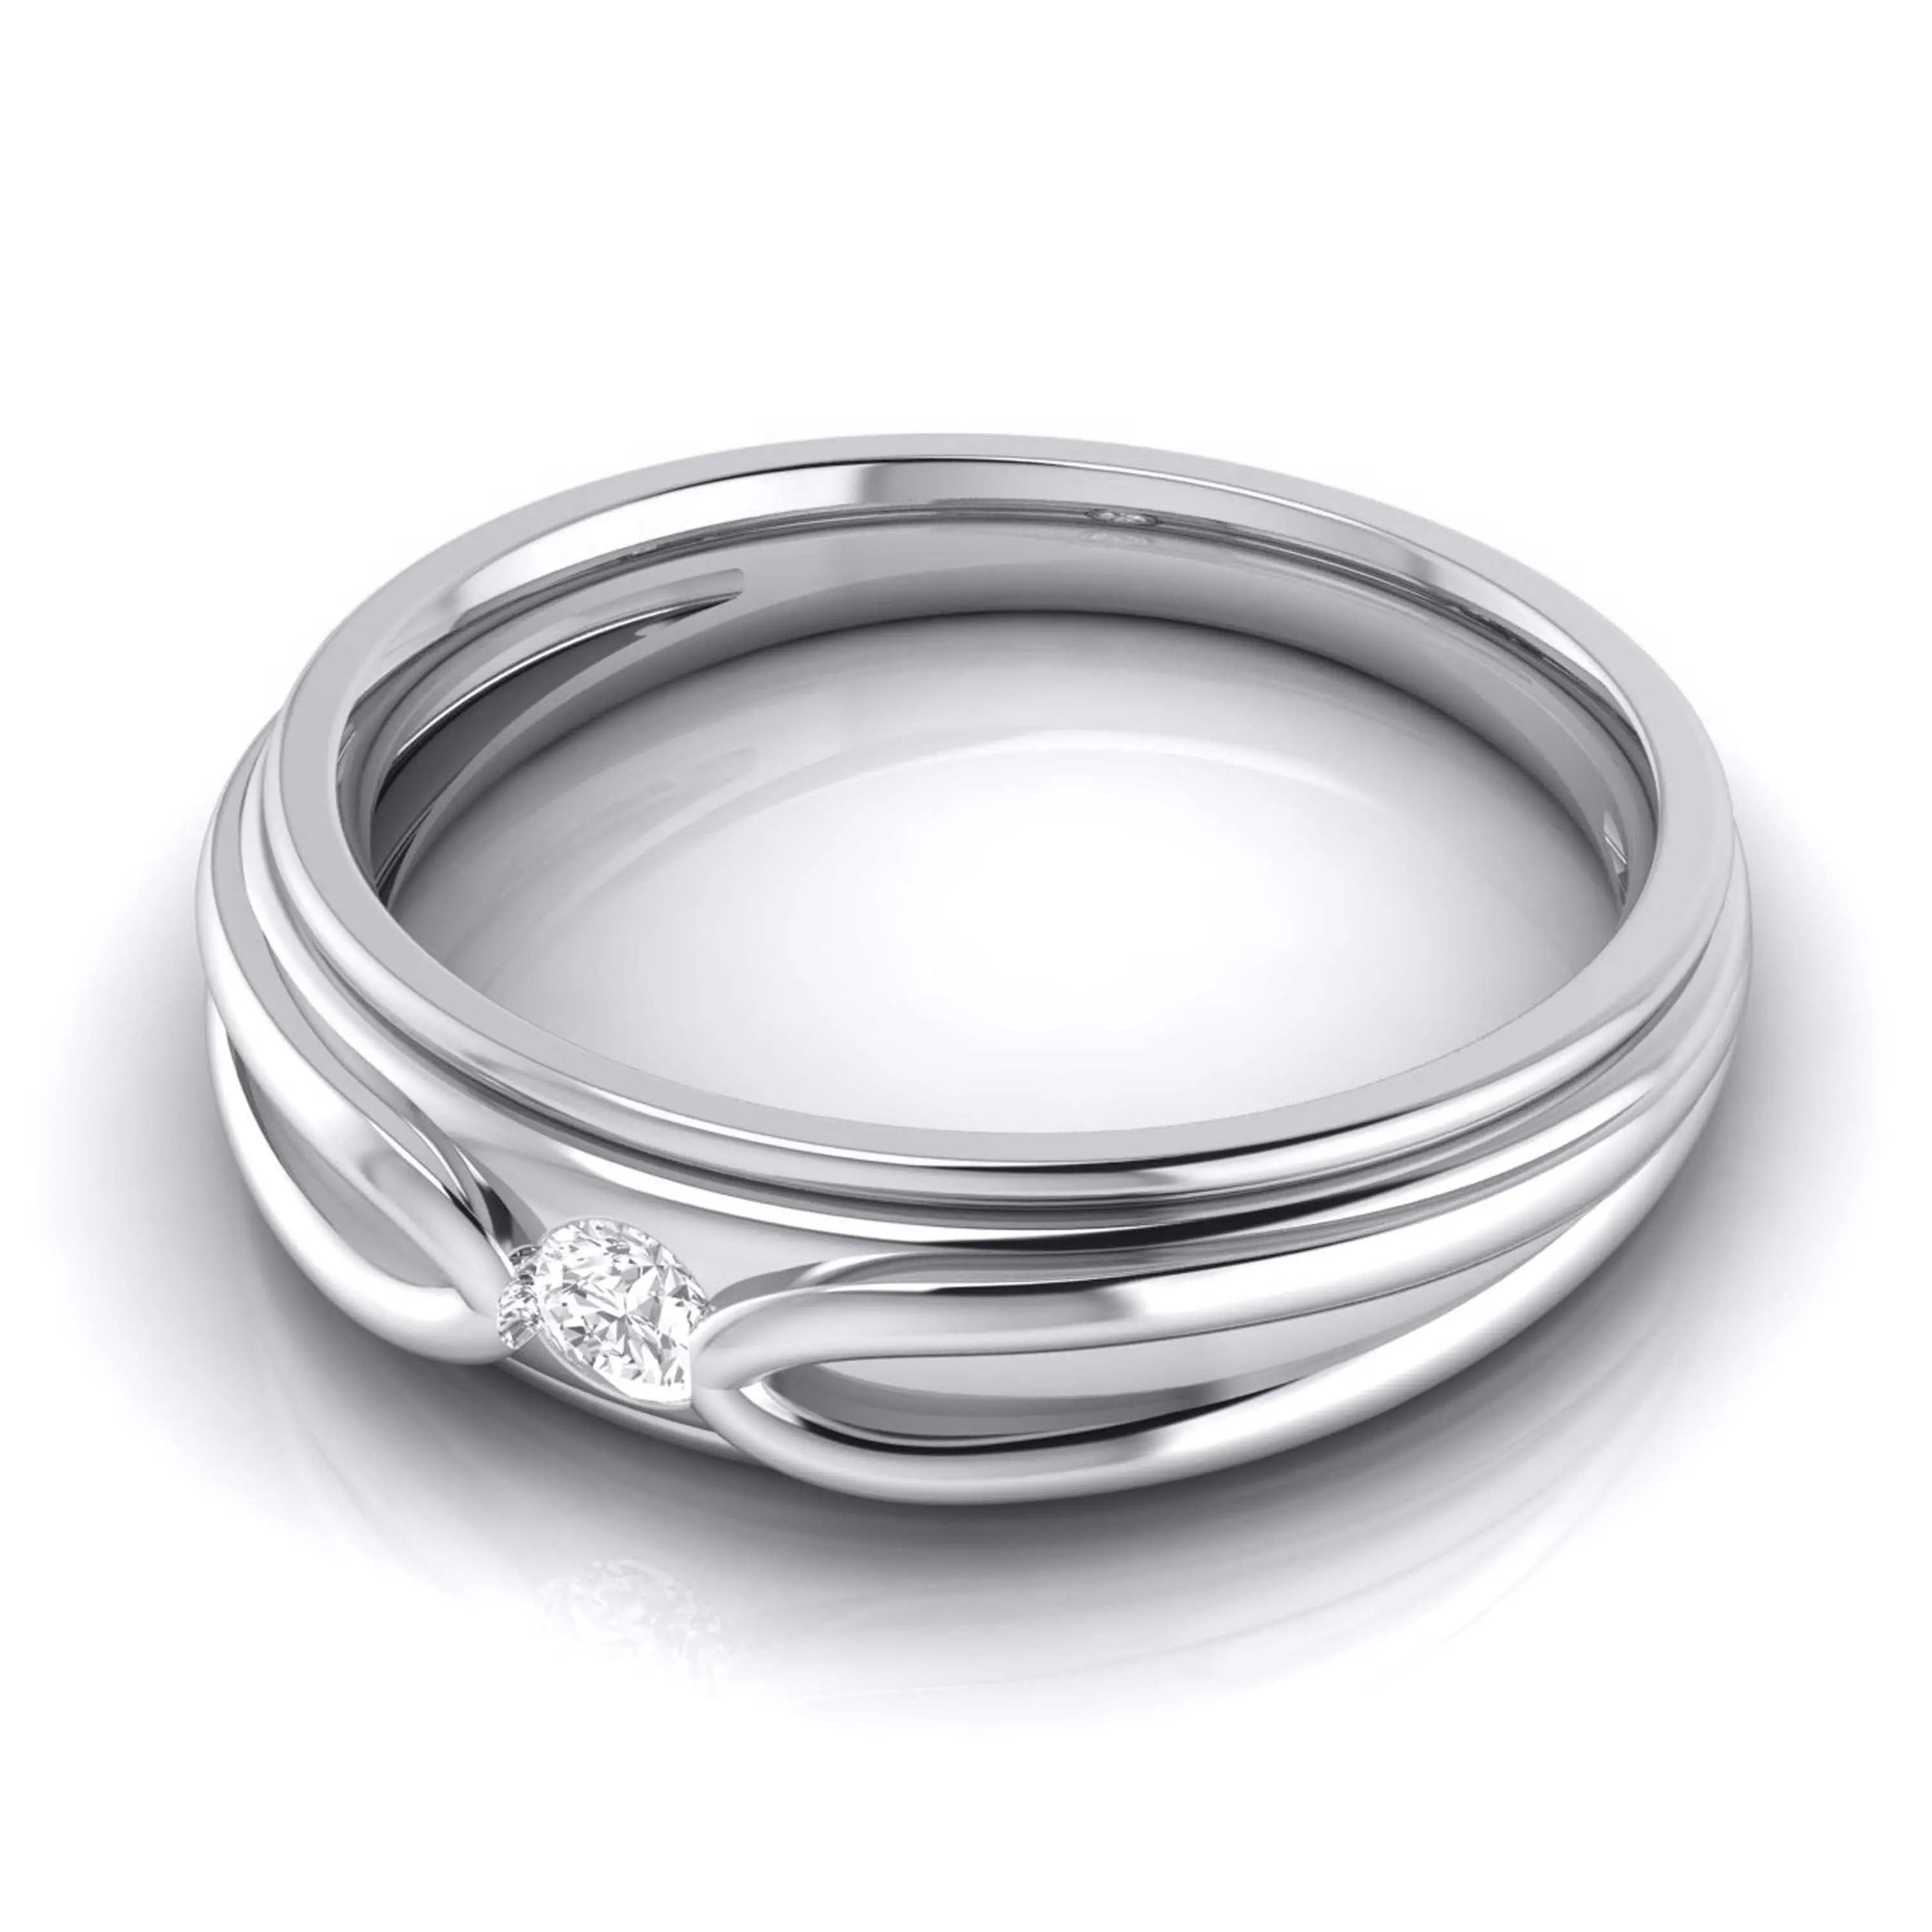 CaratLane Gordon Silver Diamond Ring Price in India - Buy CaratLane Gordon  Silver Diamond Ring Online at Best Prices in India | Flipkart.com